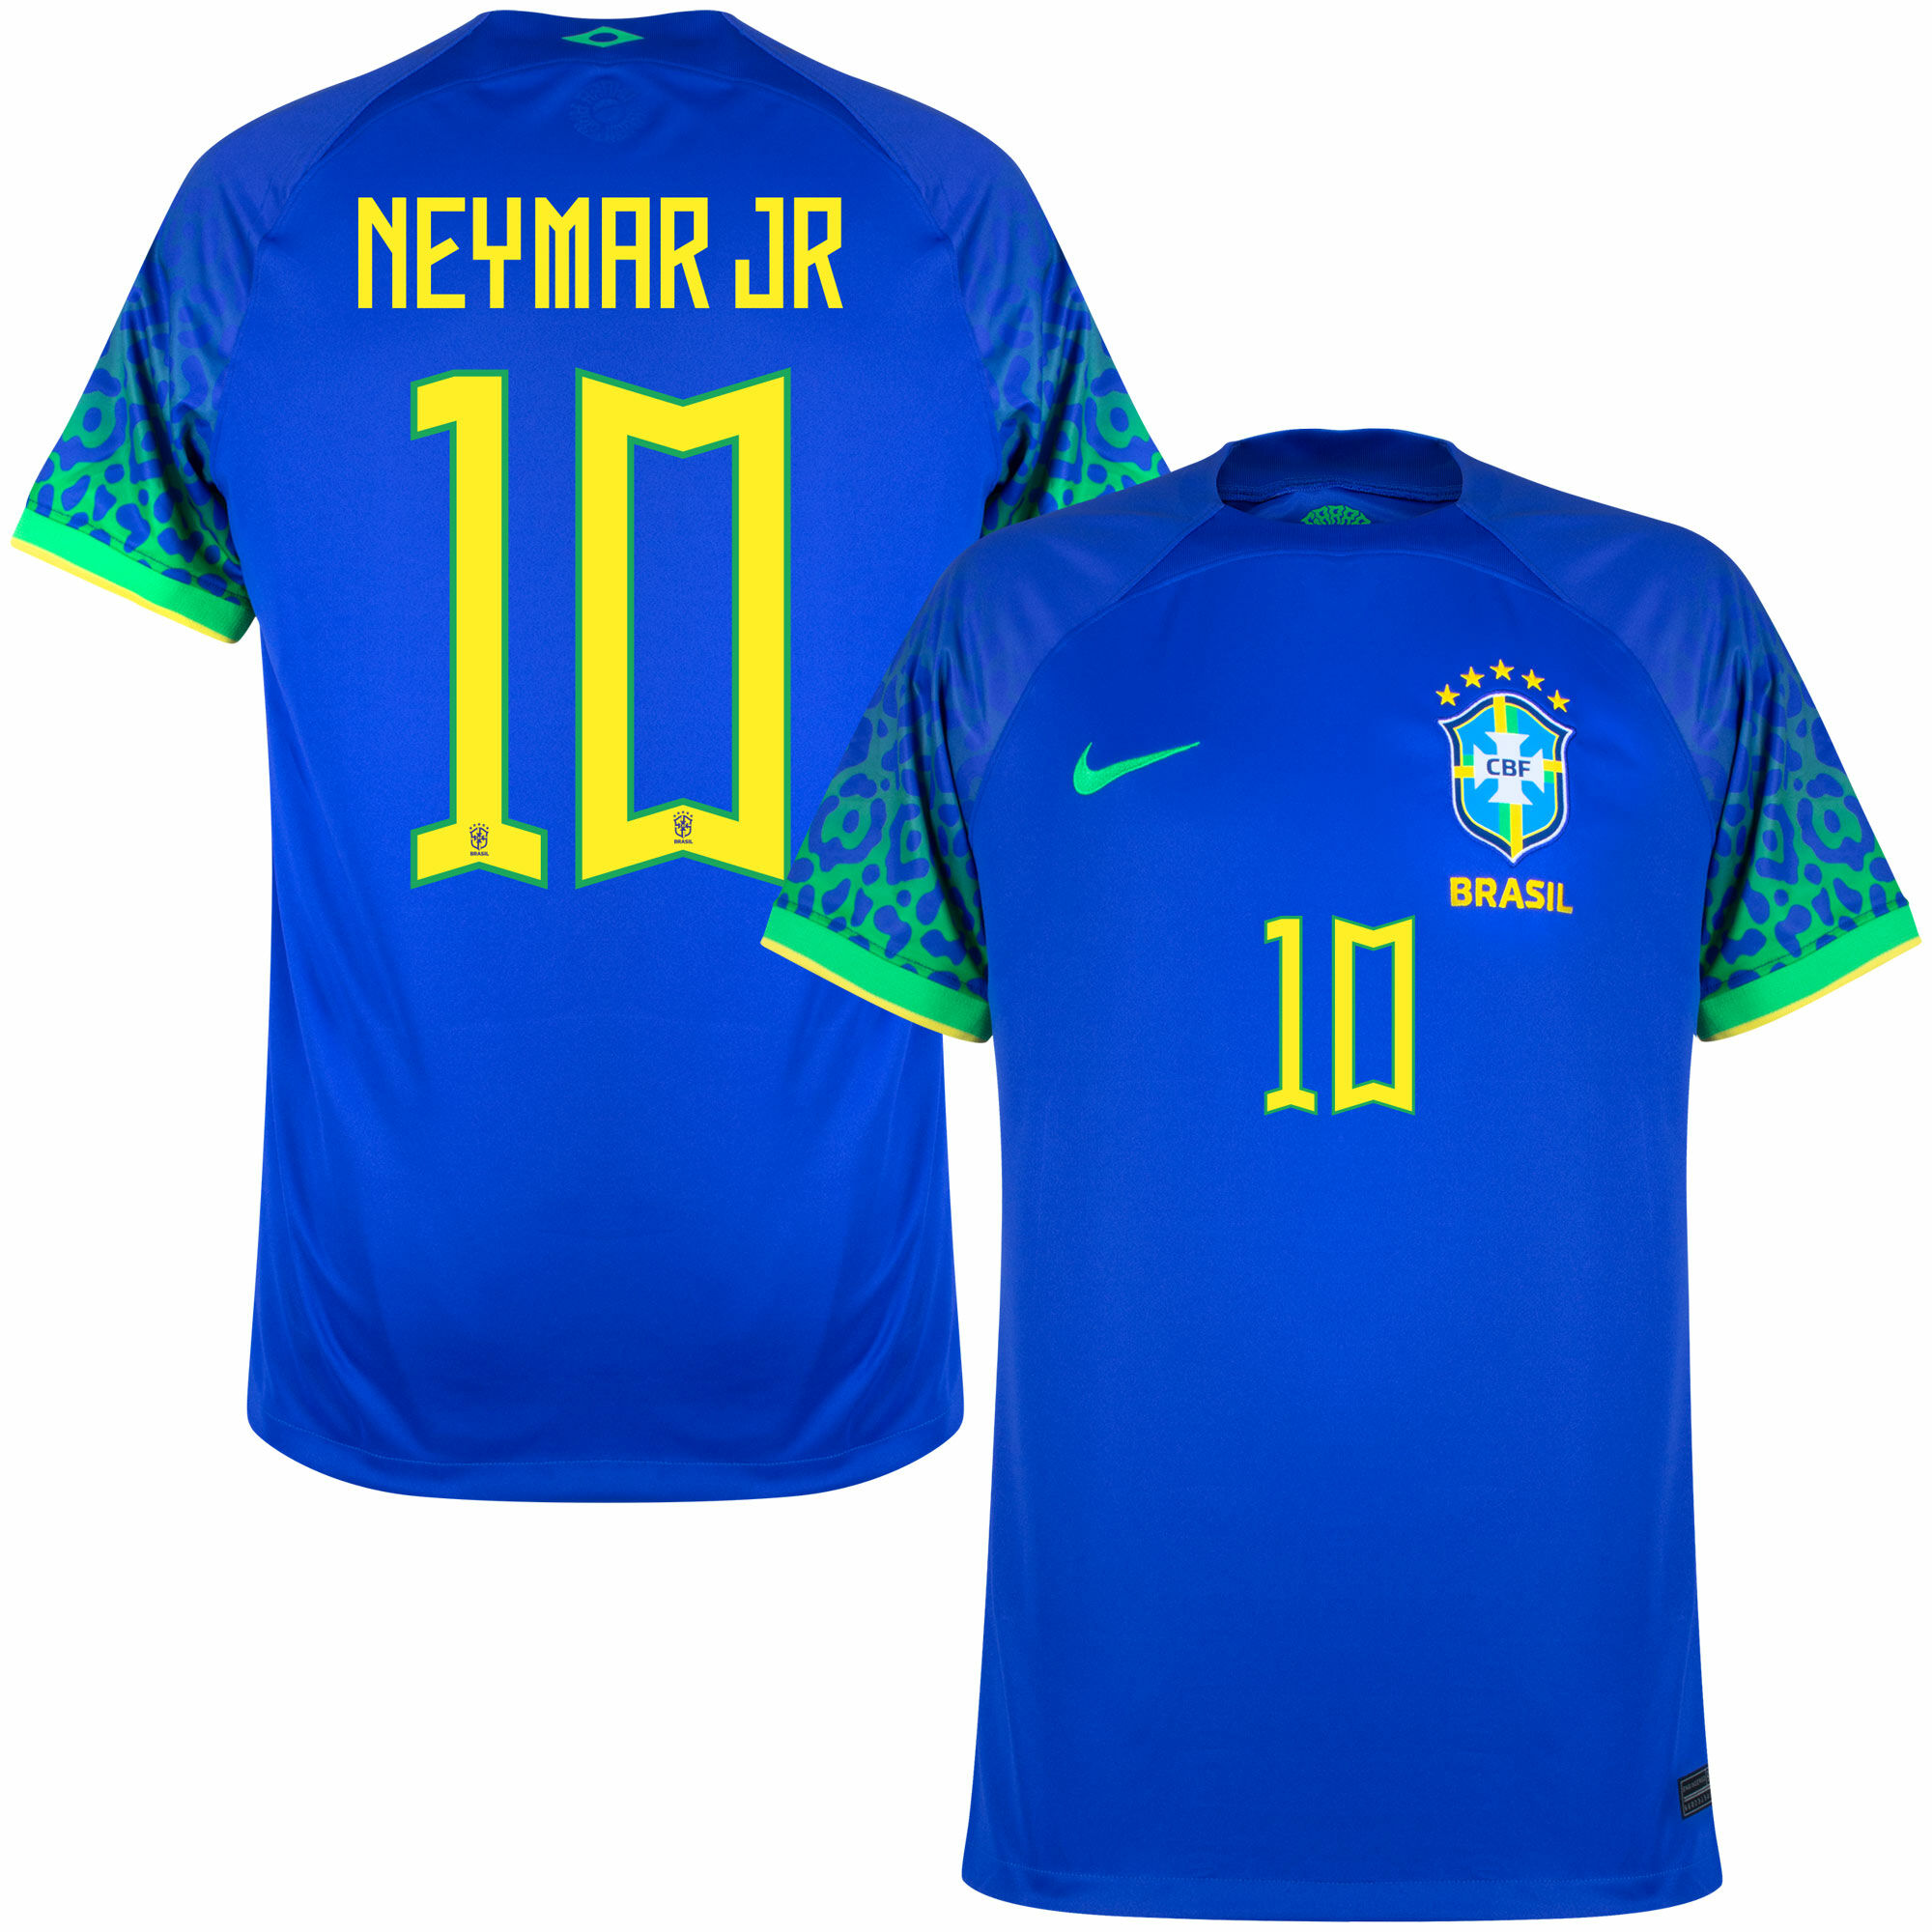 Brazílie - Dres fotbalový - oficiální potisk, číslo 10, sezóna 2022/23, Neymar, modrý, venkovní